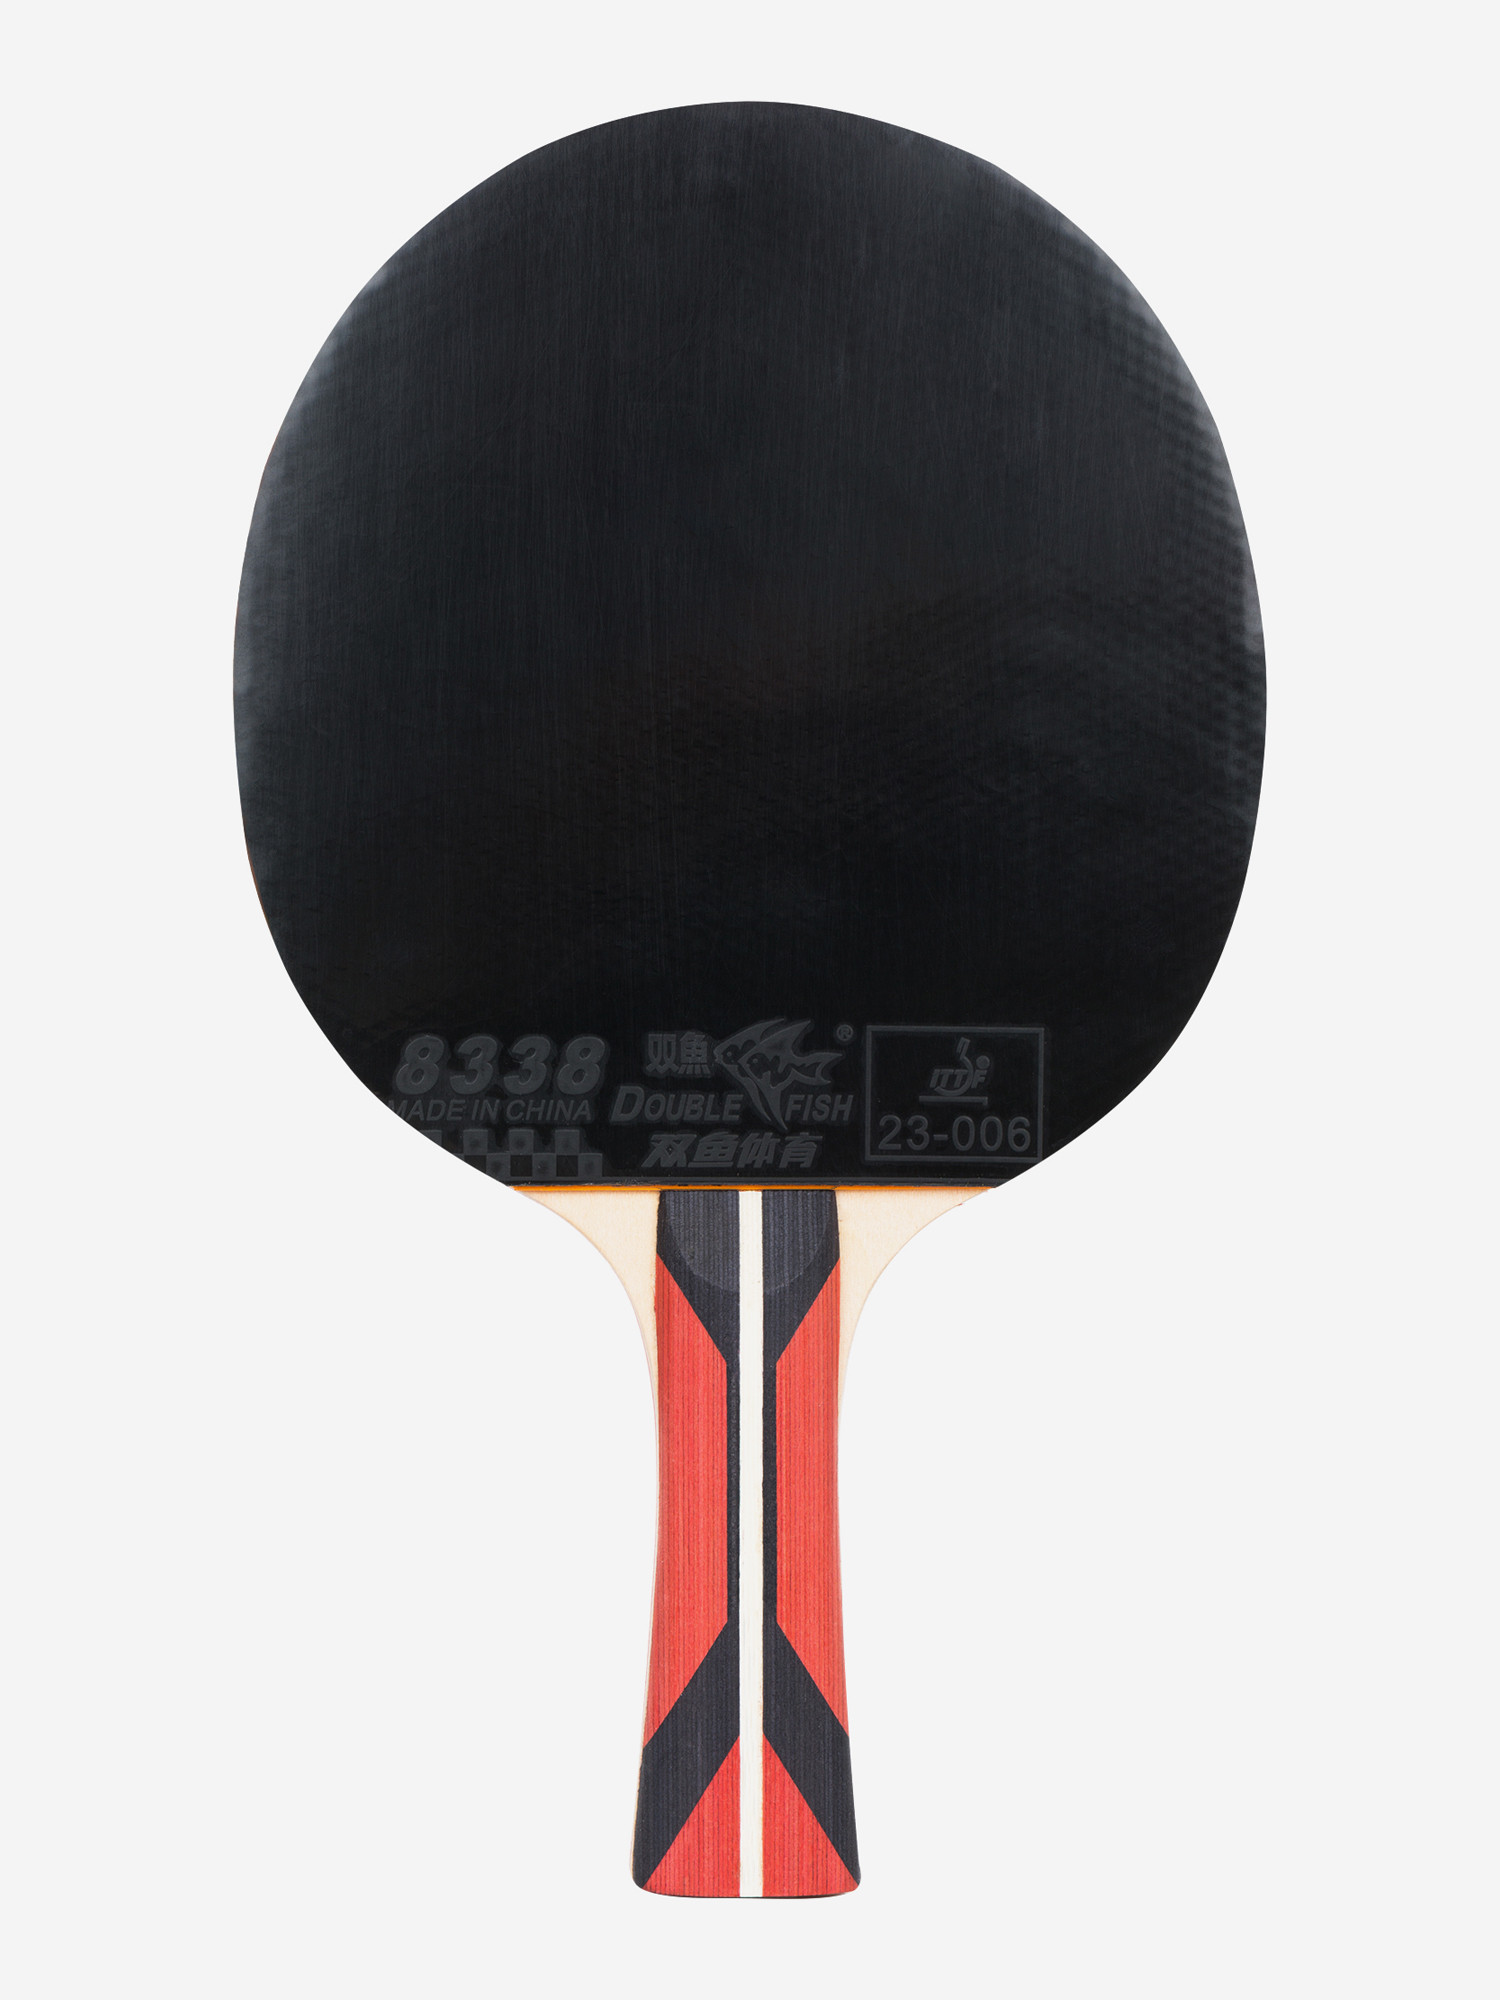 Ракетка для настільного тенісу Torneo Master